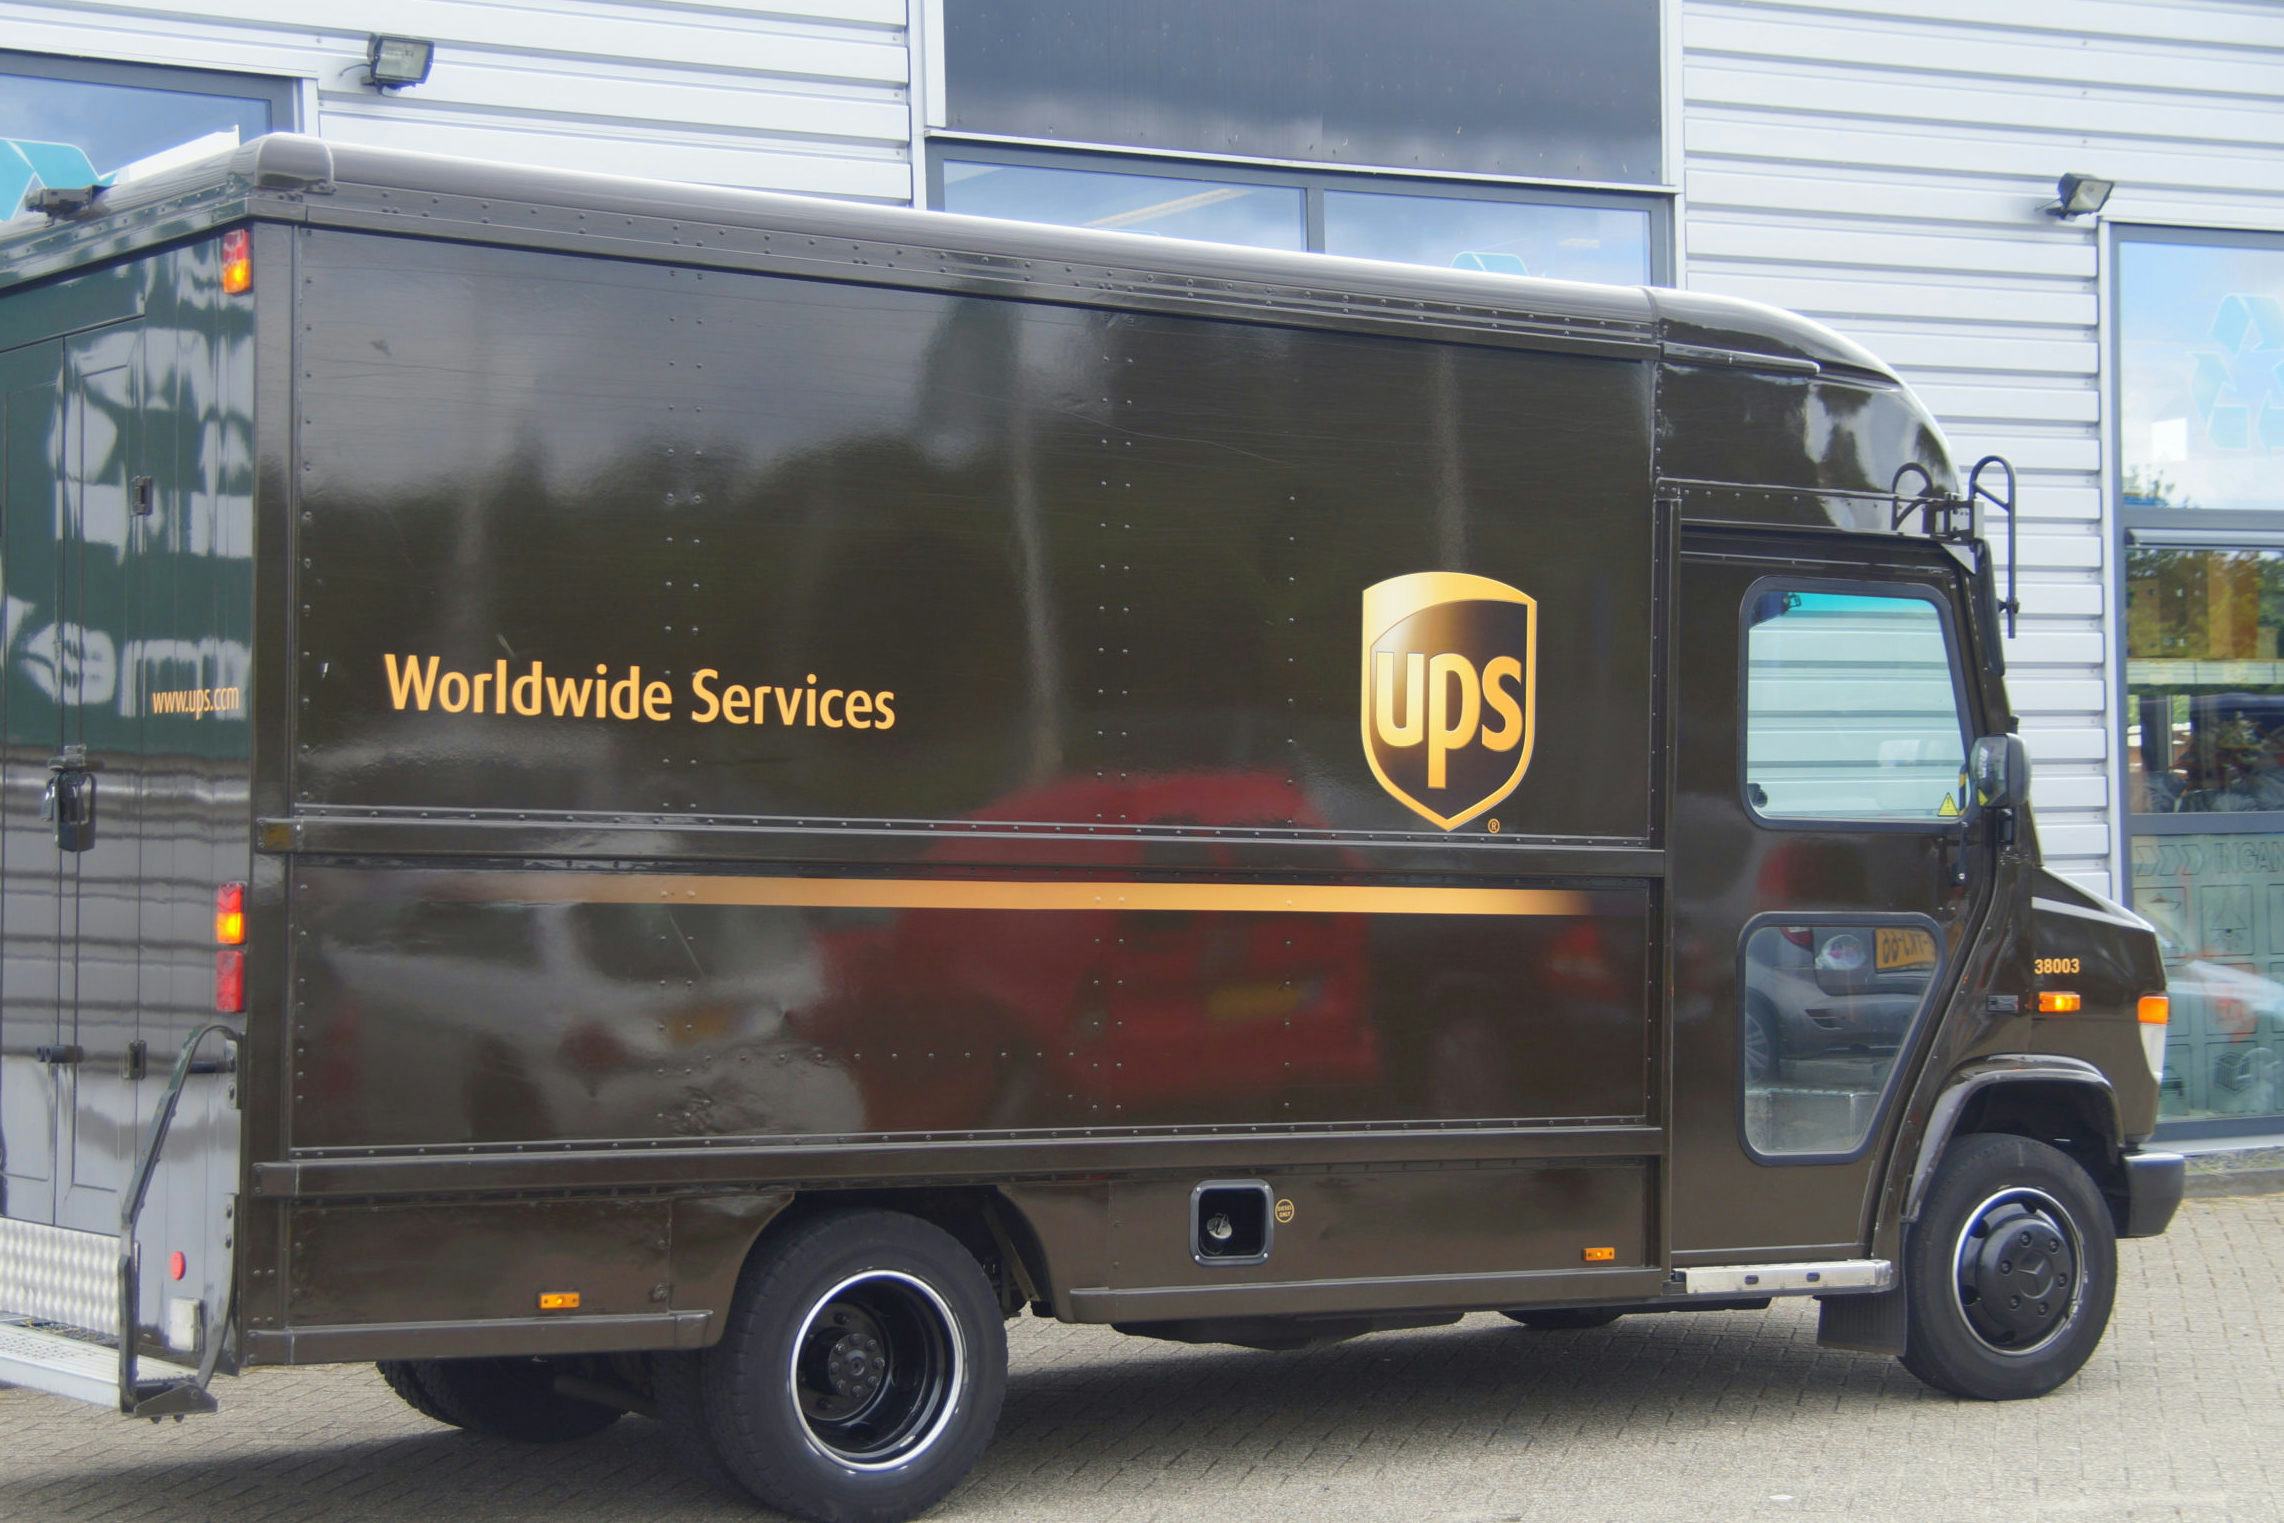 Pakketbezorger UPS profiteert van prijsverhogingen